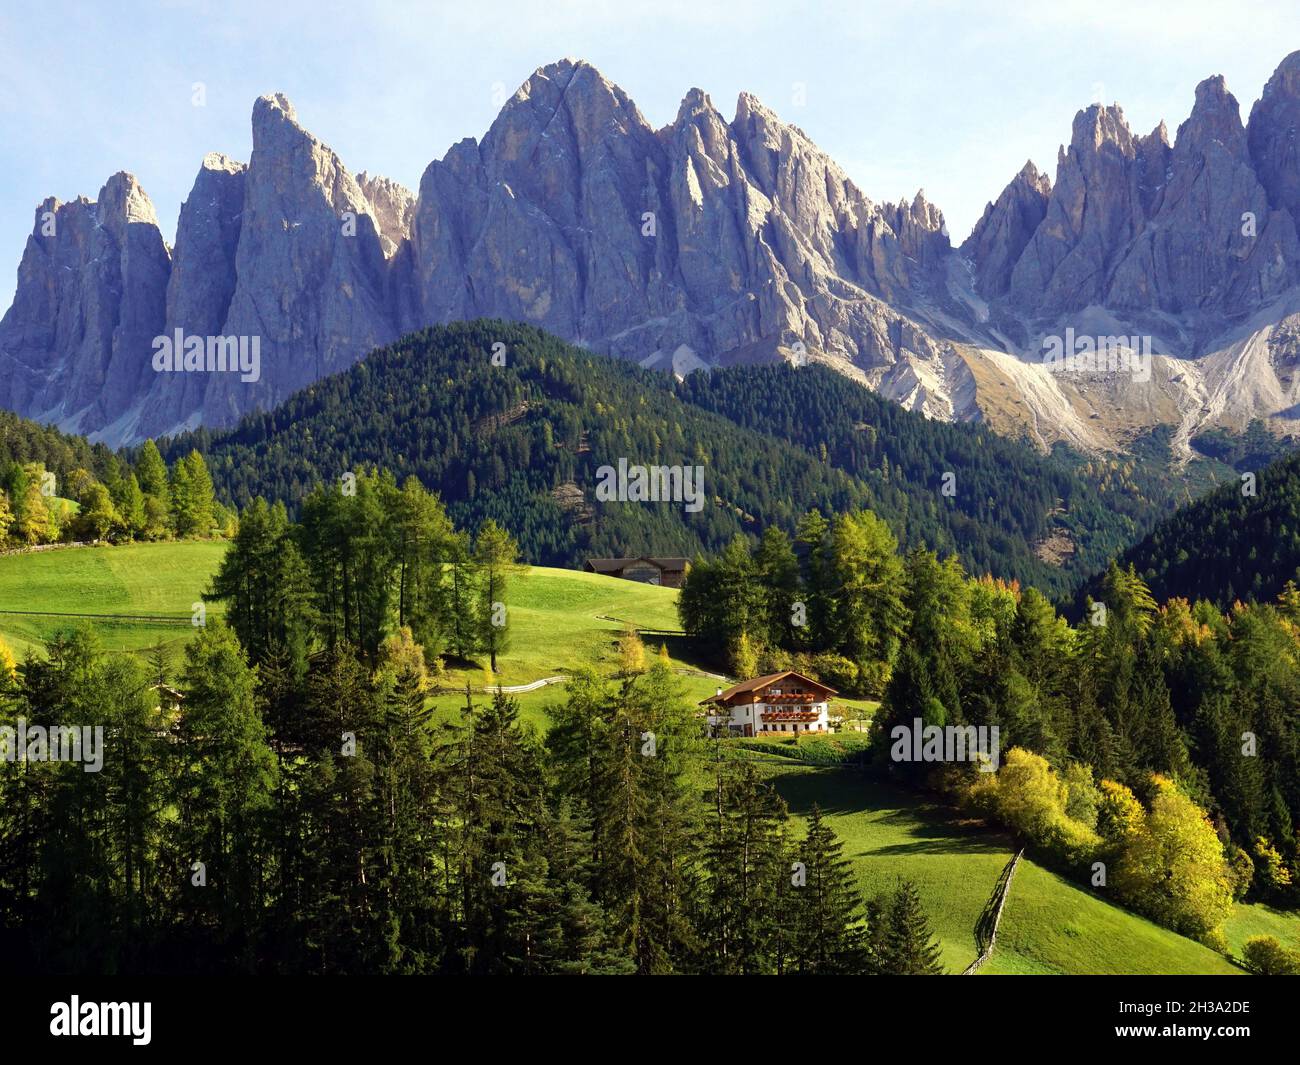 Schöne Aussicht auf idyllische Berglandschaft in den Dolomiten, das Dorf Santa Maddalena und das Geislergebirge. Südtirol, Italien Stockfoto